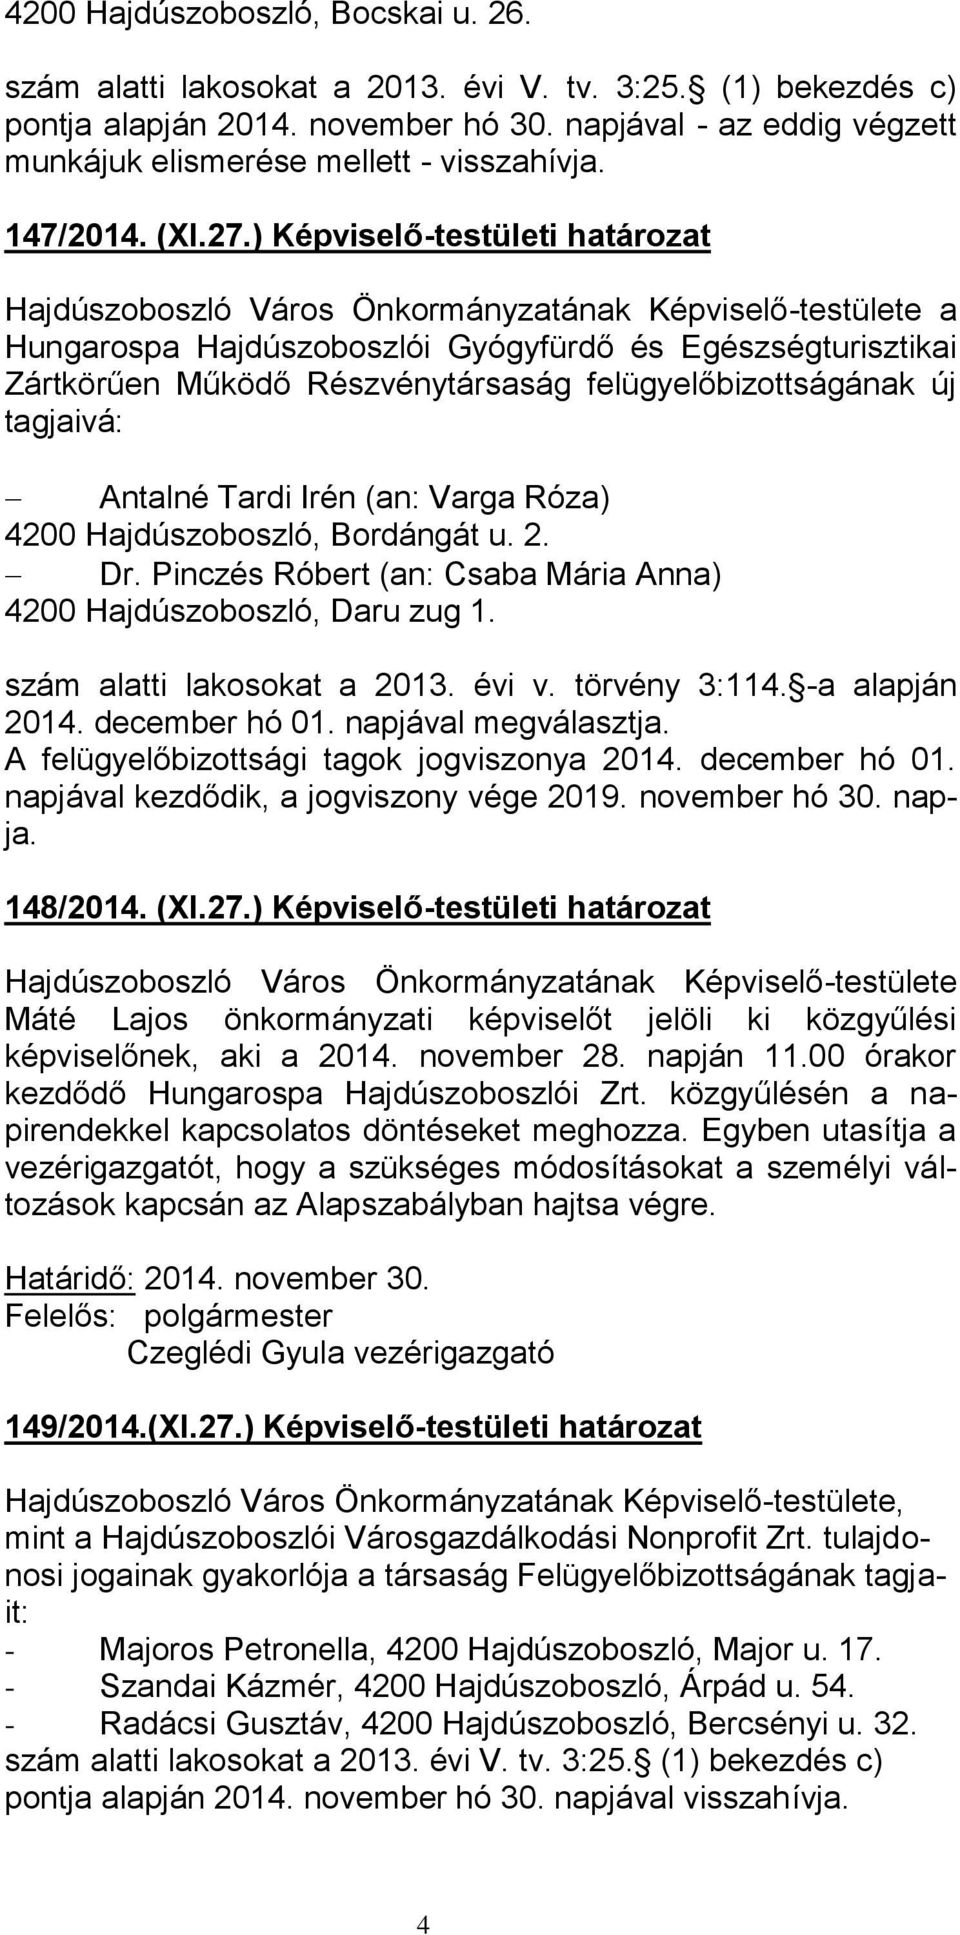 ) Képviselő-testületi határozat a Hungarospa Hajdúszoboszlói Gyógyfürdő és Egészségturisztikai Zártkörűen Működő Részvénytársaság felügyelőbizottságának új tagjaivá: Antalné Tardi Irén (an: Varga